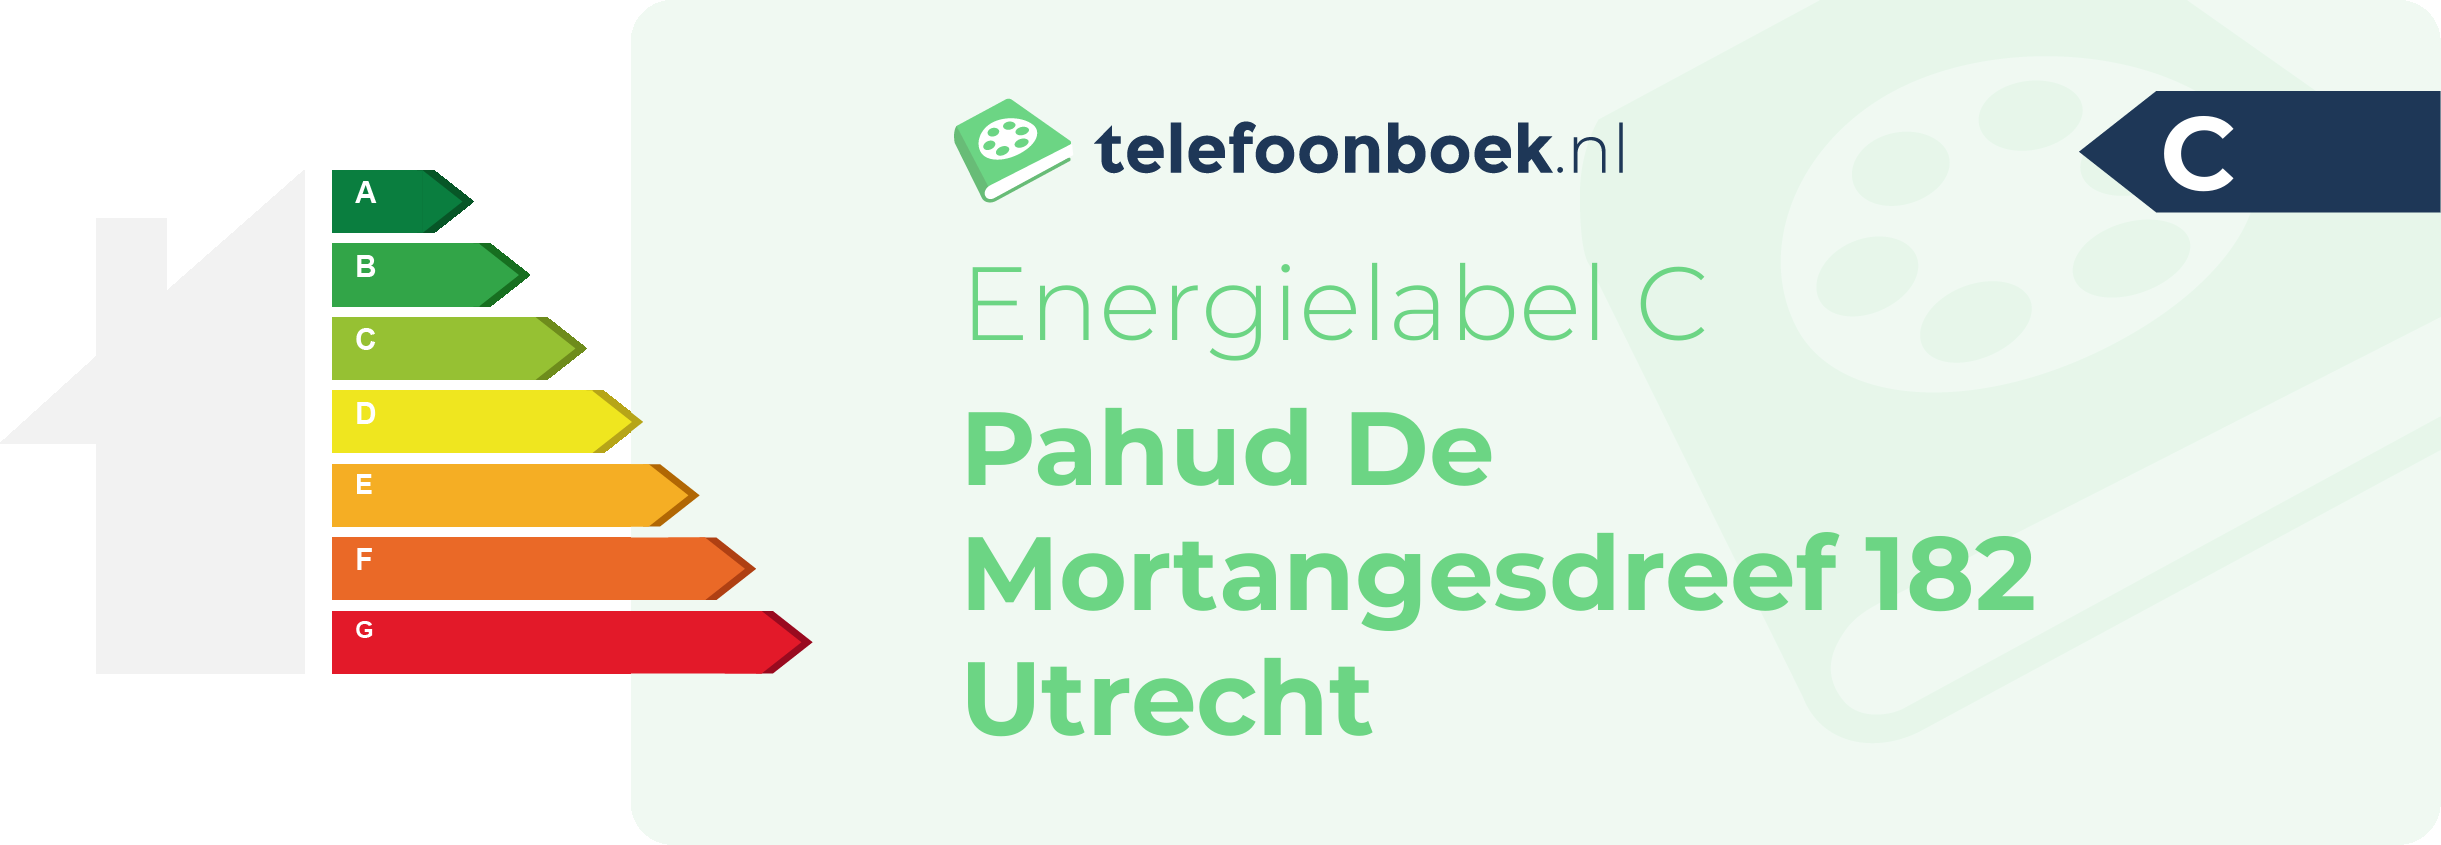 Energielabel Pahud De Mortangesdreef 182 Utrecht